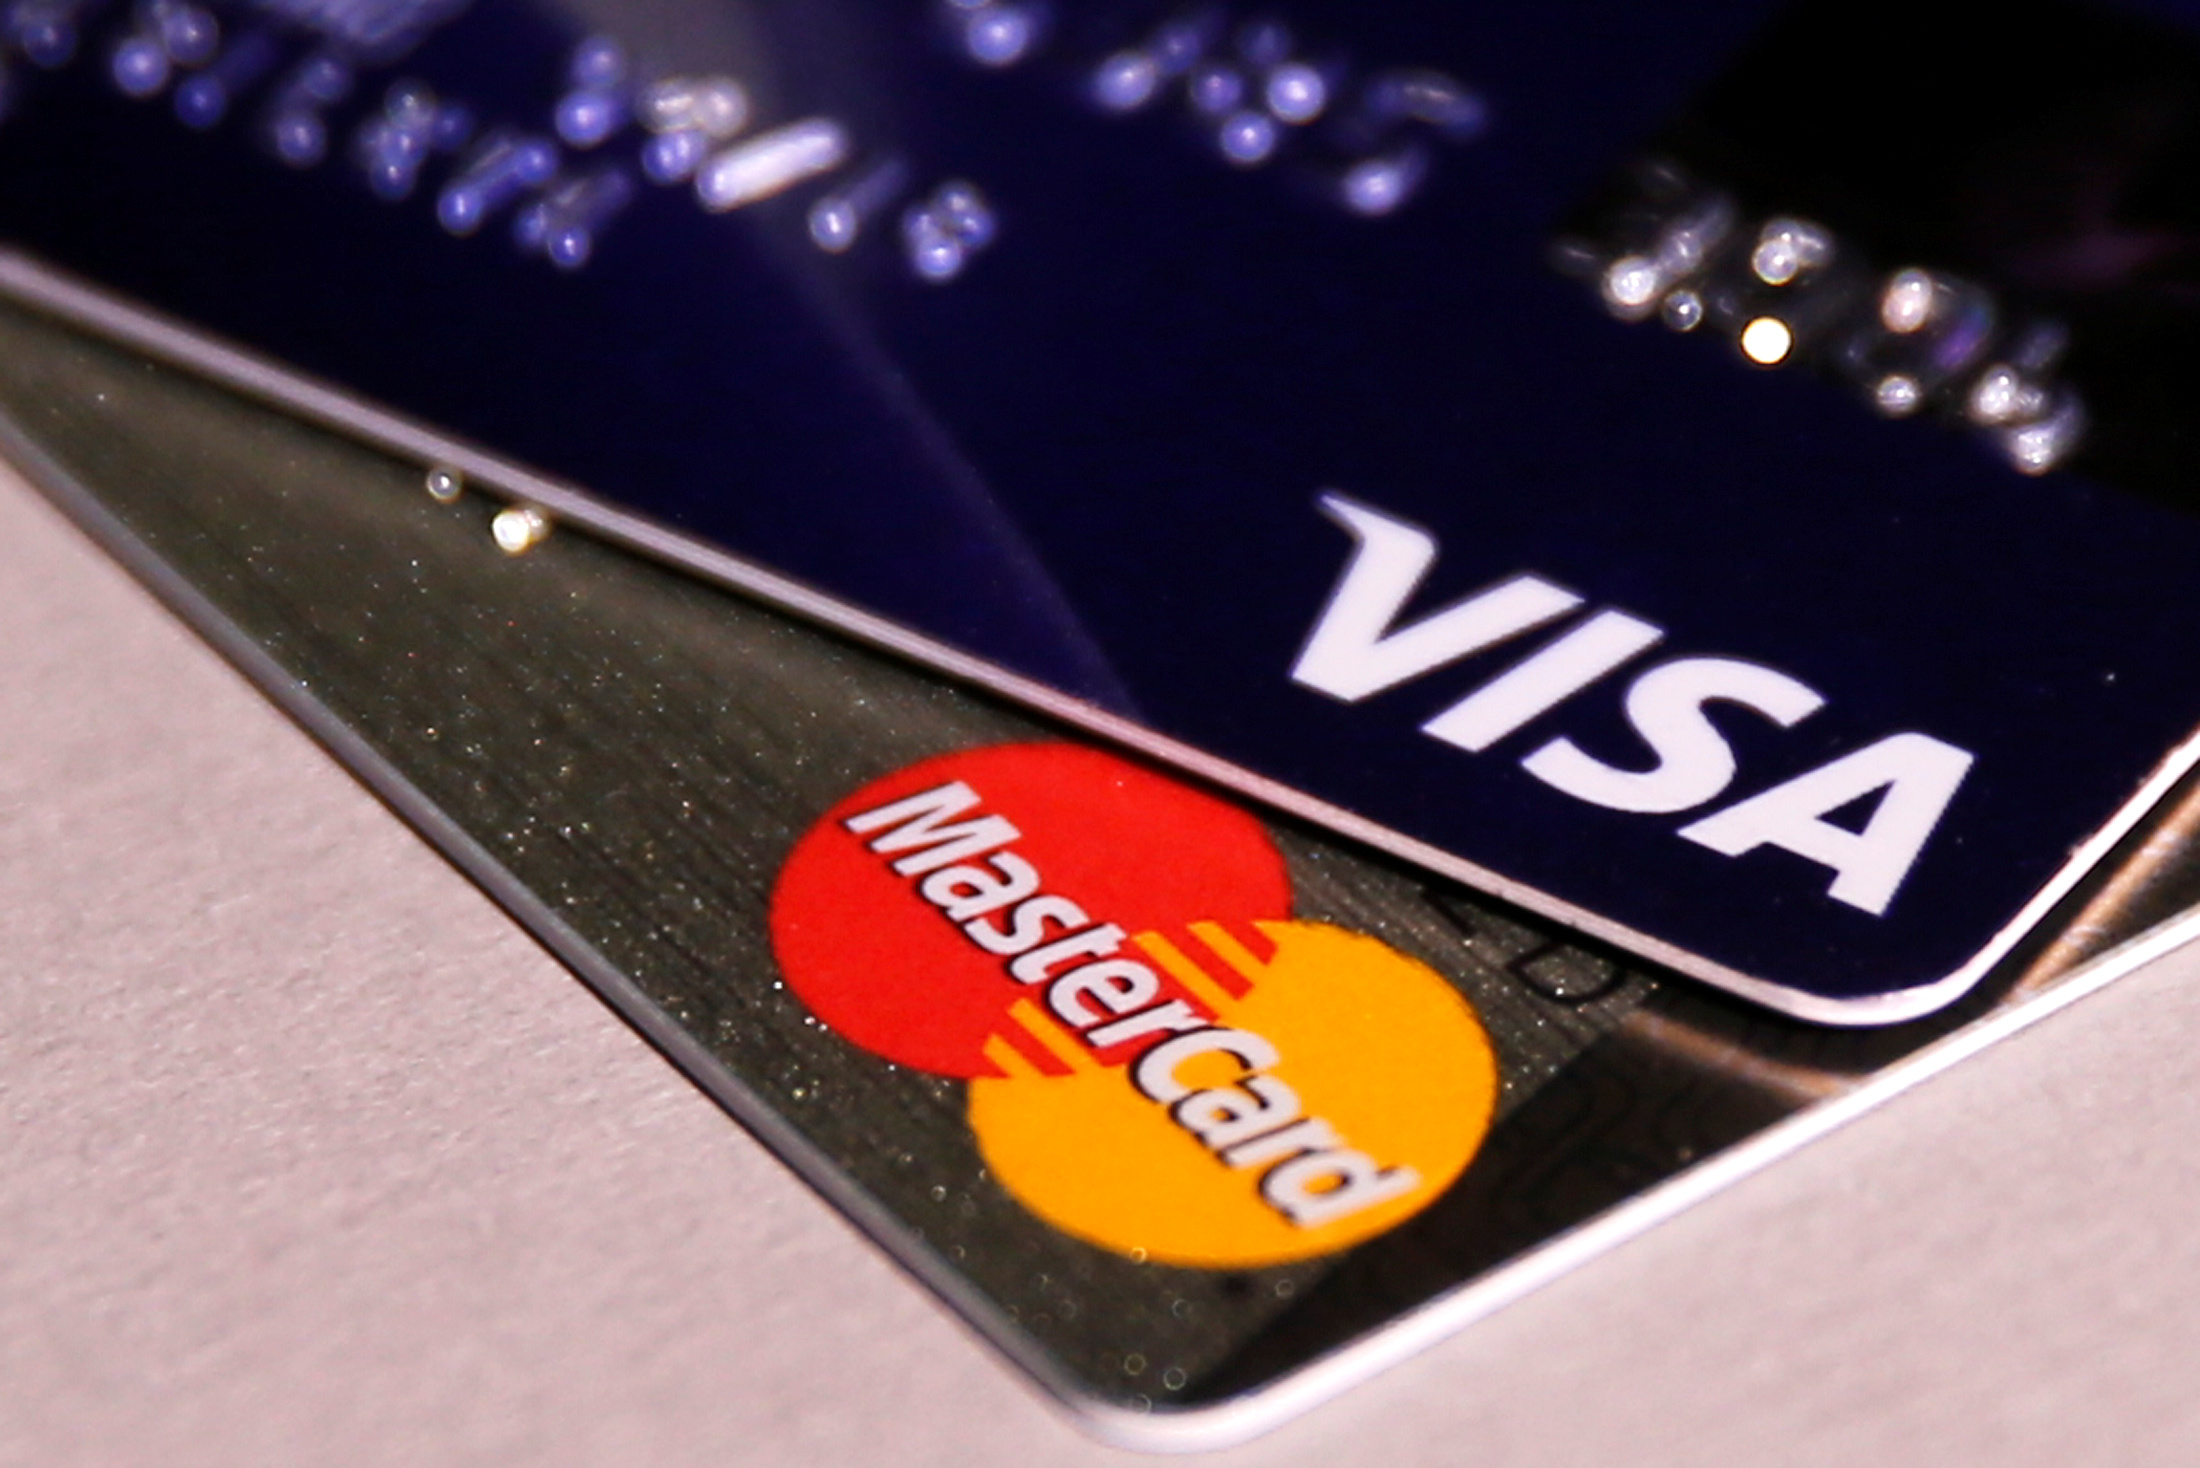 BCV y Sudeban obligarán a la banca a dejar de operar con Visa y Mastercard antes de 2020